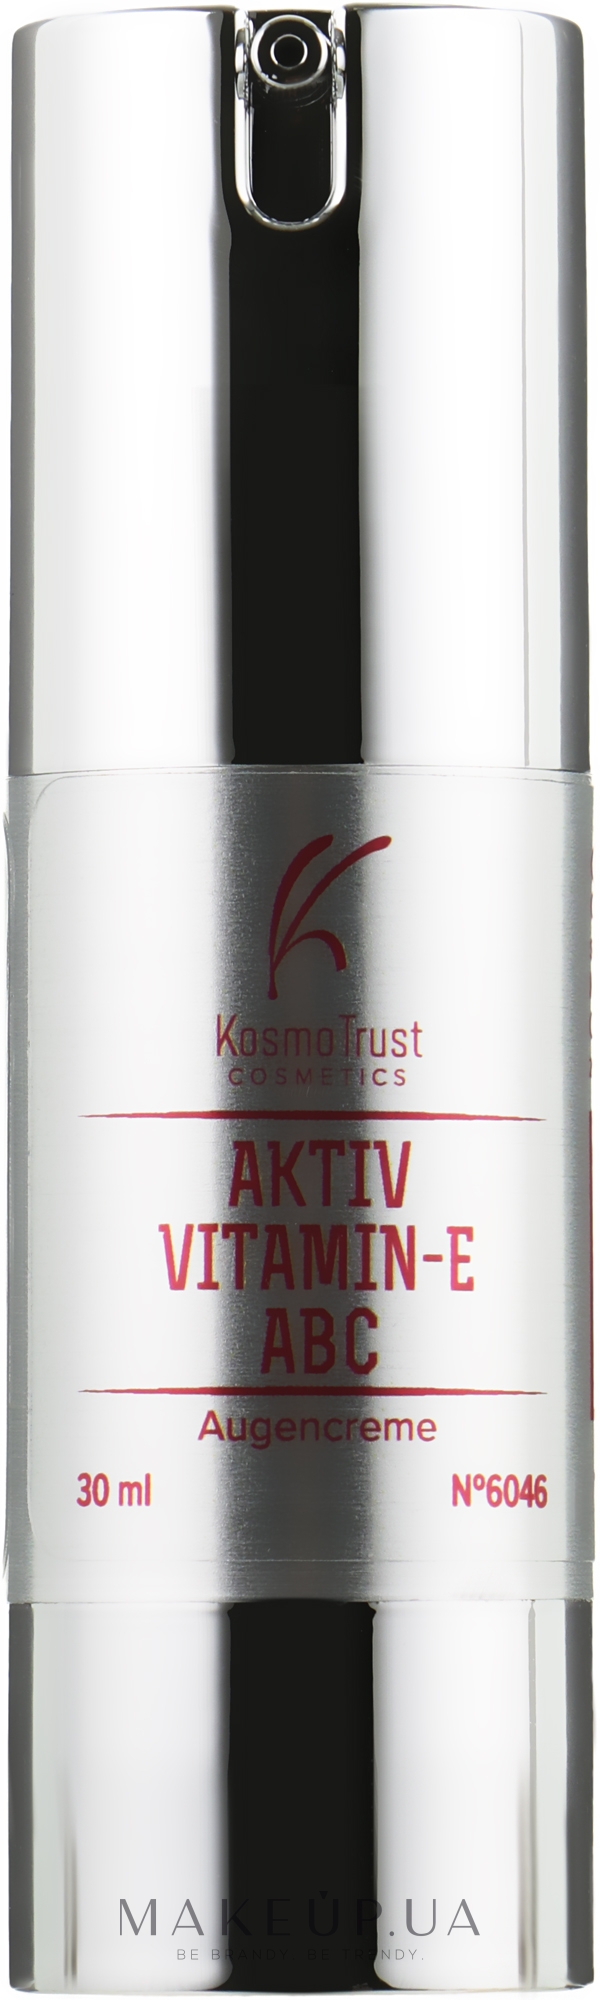 Крем для век с активным витамином Е и комплексом АВС - KosmoTrust Cosmetics Aktiv-Vitamin E ABC Augencreme — фото 30ml